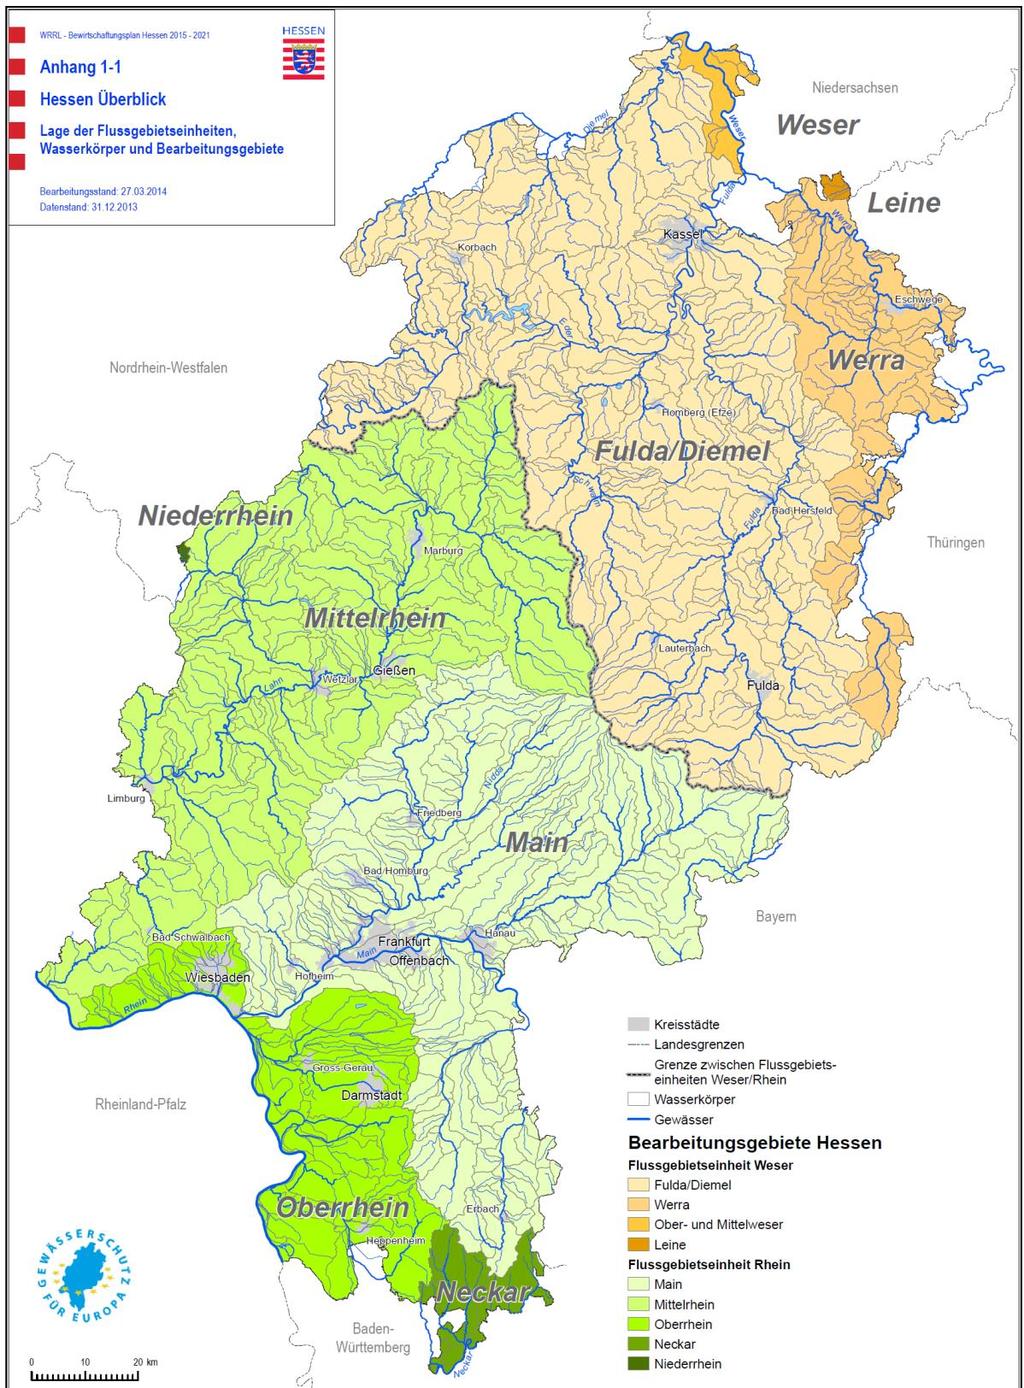 Hessischer Anteil am Wesereinzugsgebiet 61 Grundwasserkörper Flächennutzungen in den Flussgebietseinheiten Rhein und Weser (hessischer Anteil) Flusseinzugsgebiet Rhein (hess.